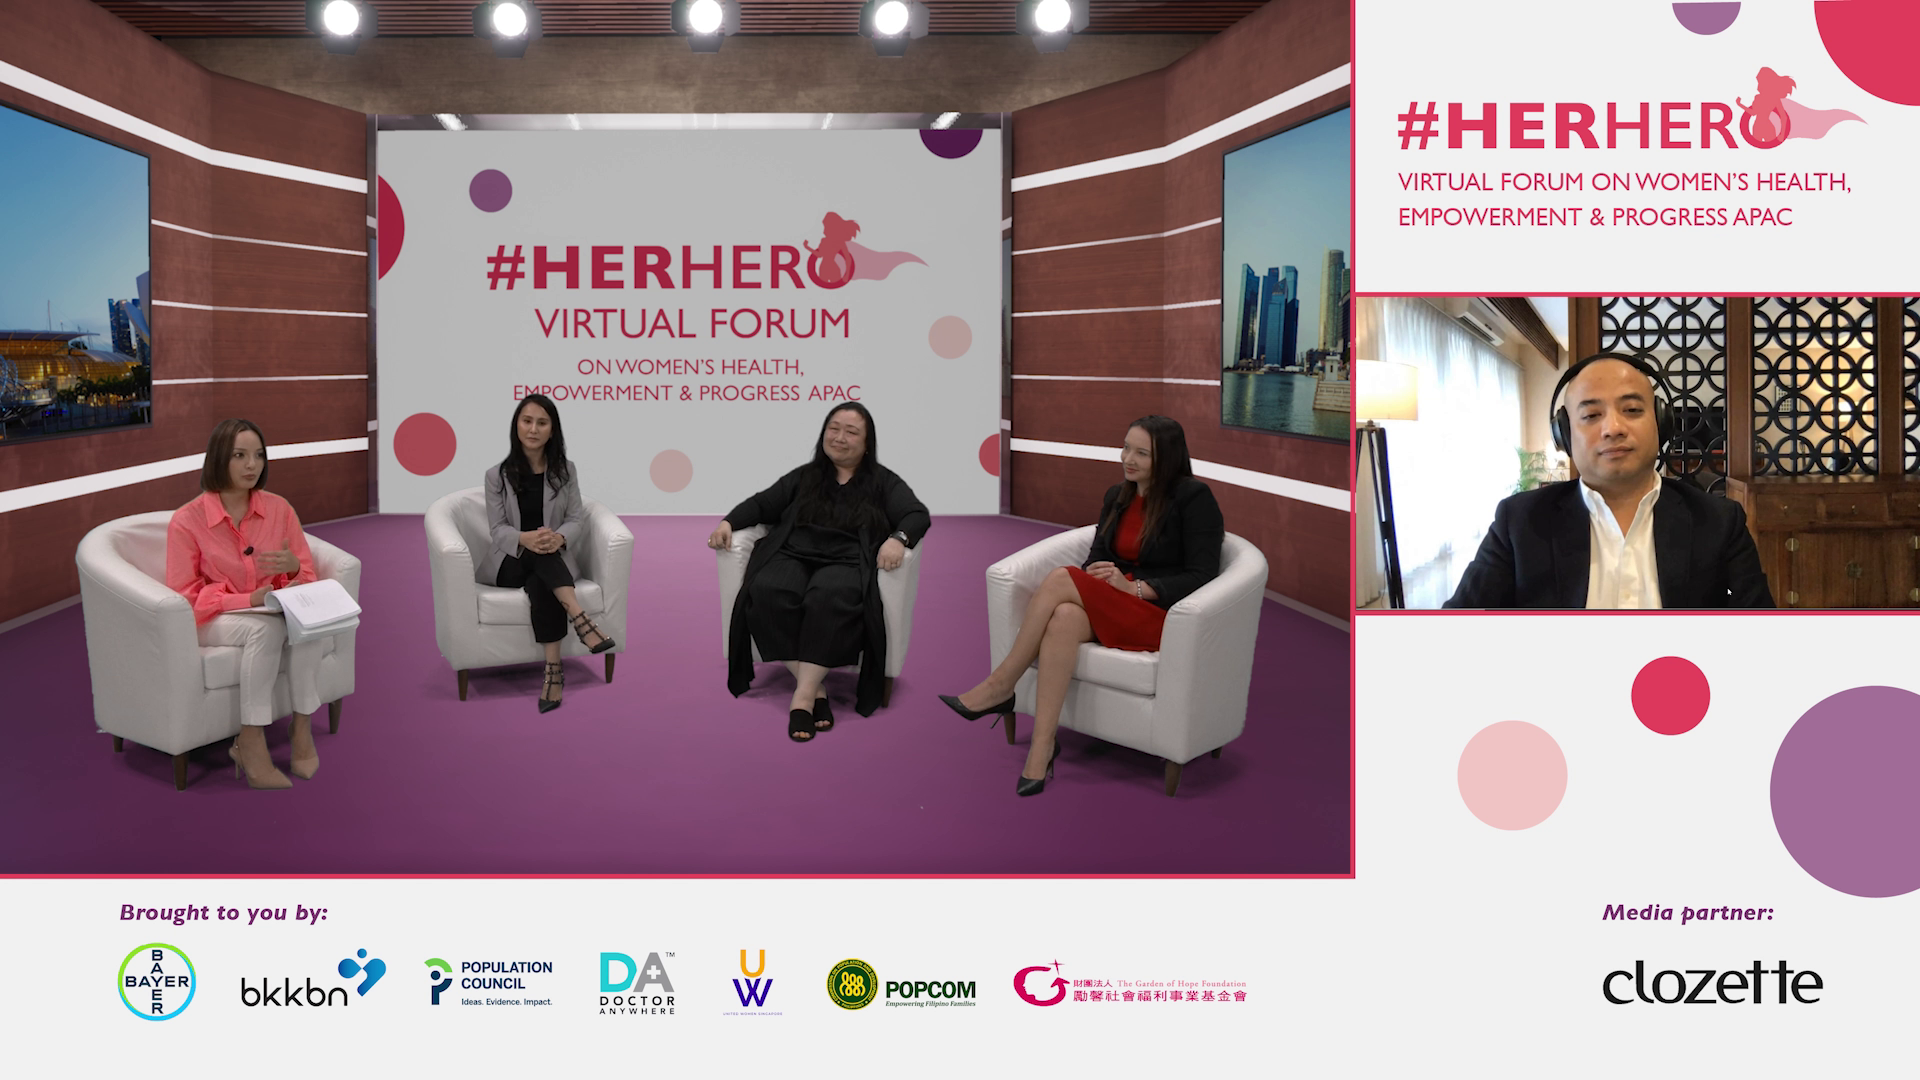 แคมเปญ #HerHero รณรงค์ให้ผู้หญิงตระหนักถึงความสำคัญของการวางแผนครอบครัวและสุขภาพในช่วงโควิด-19